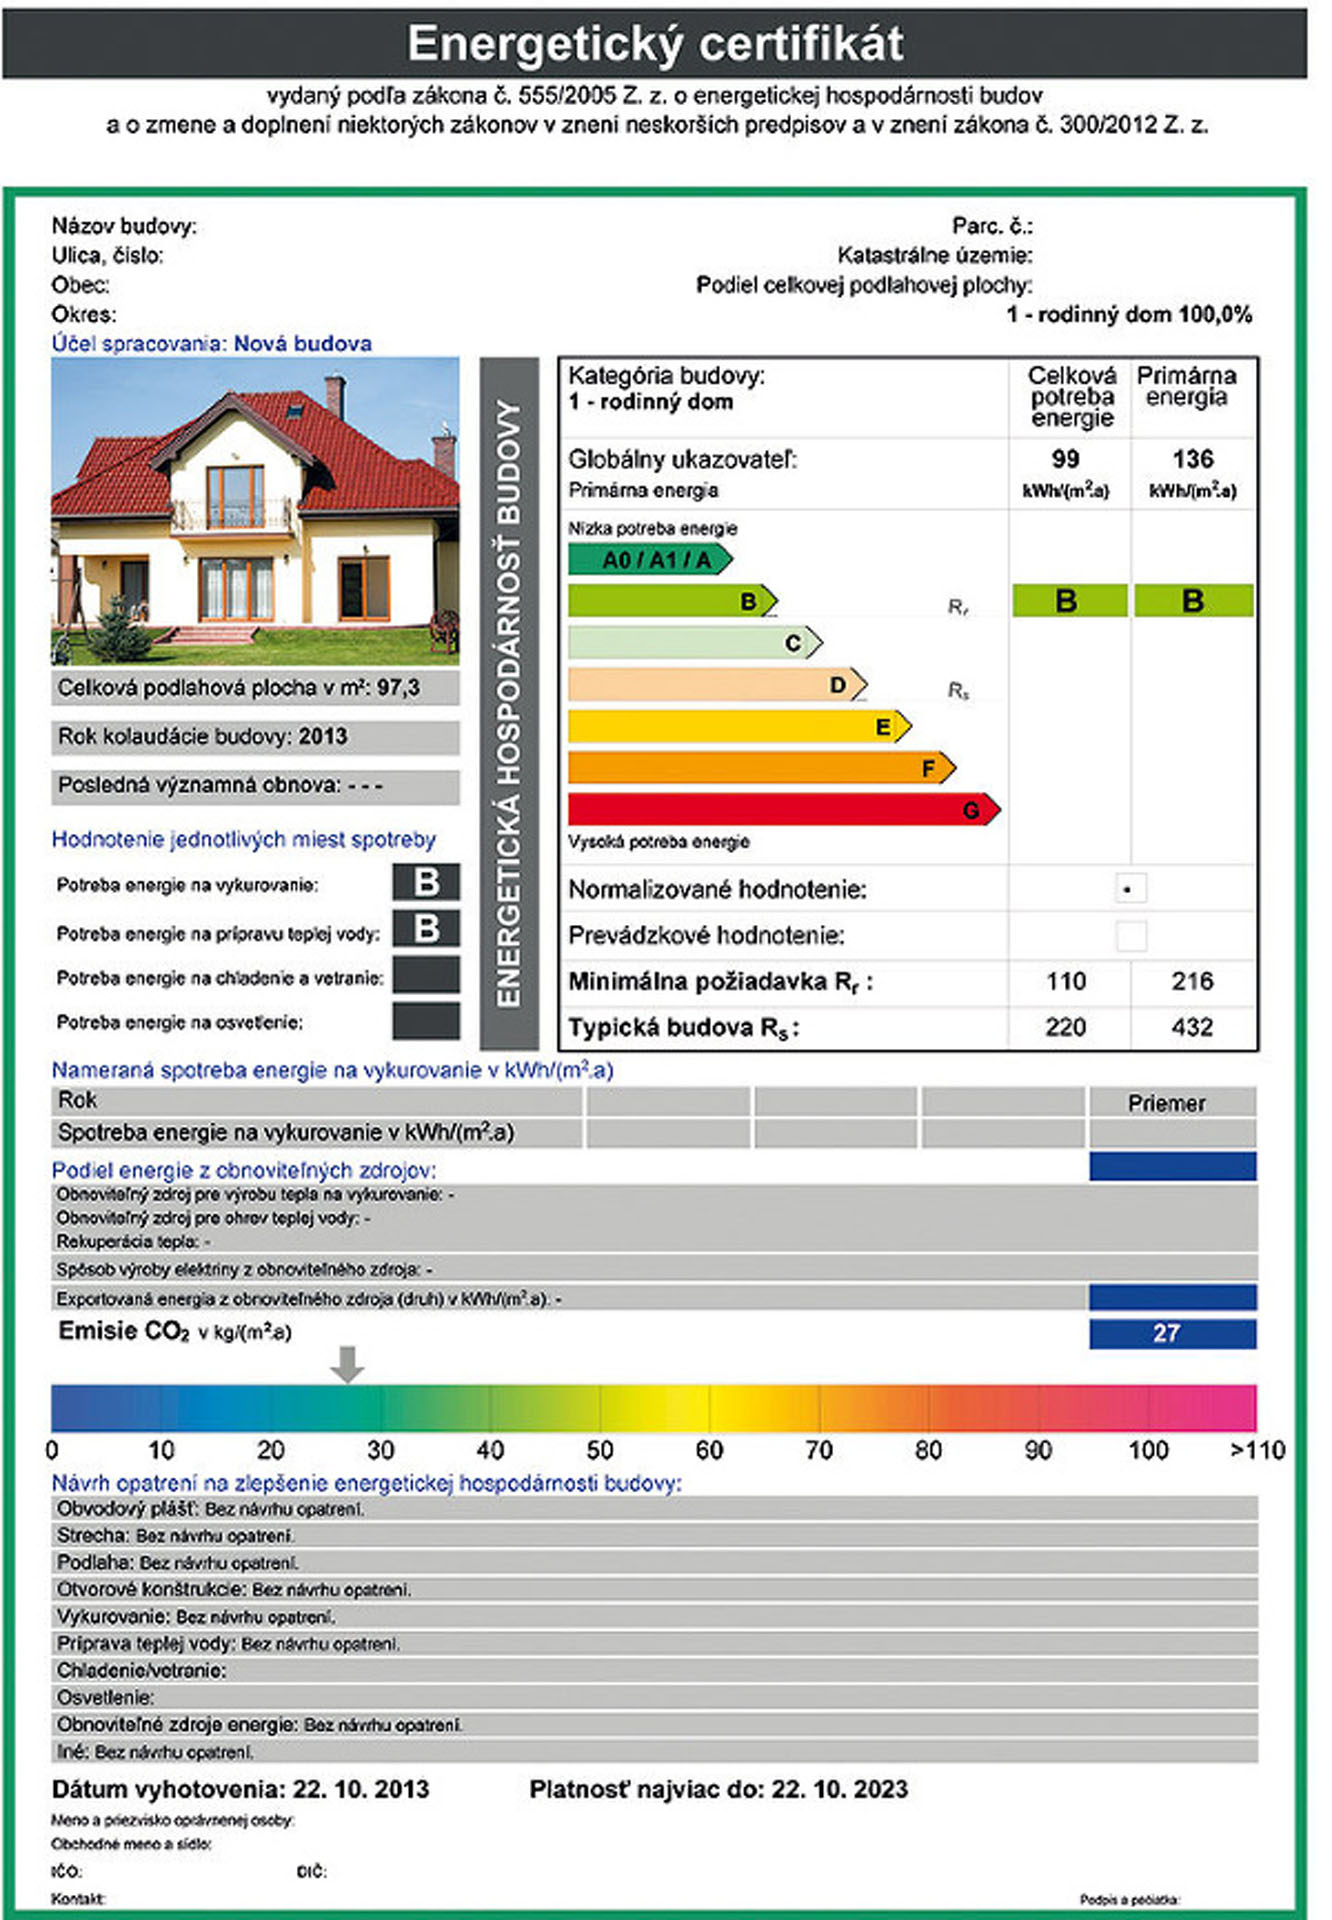 Takto vyzerá certifikát o spotrebe energie